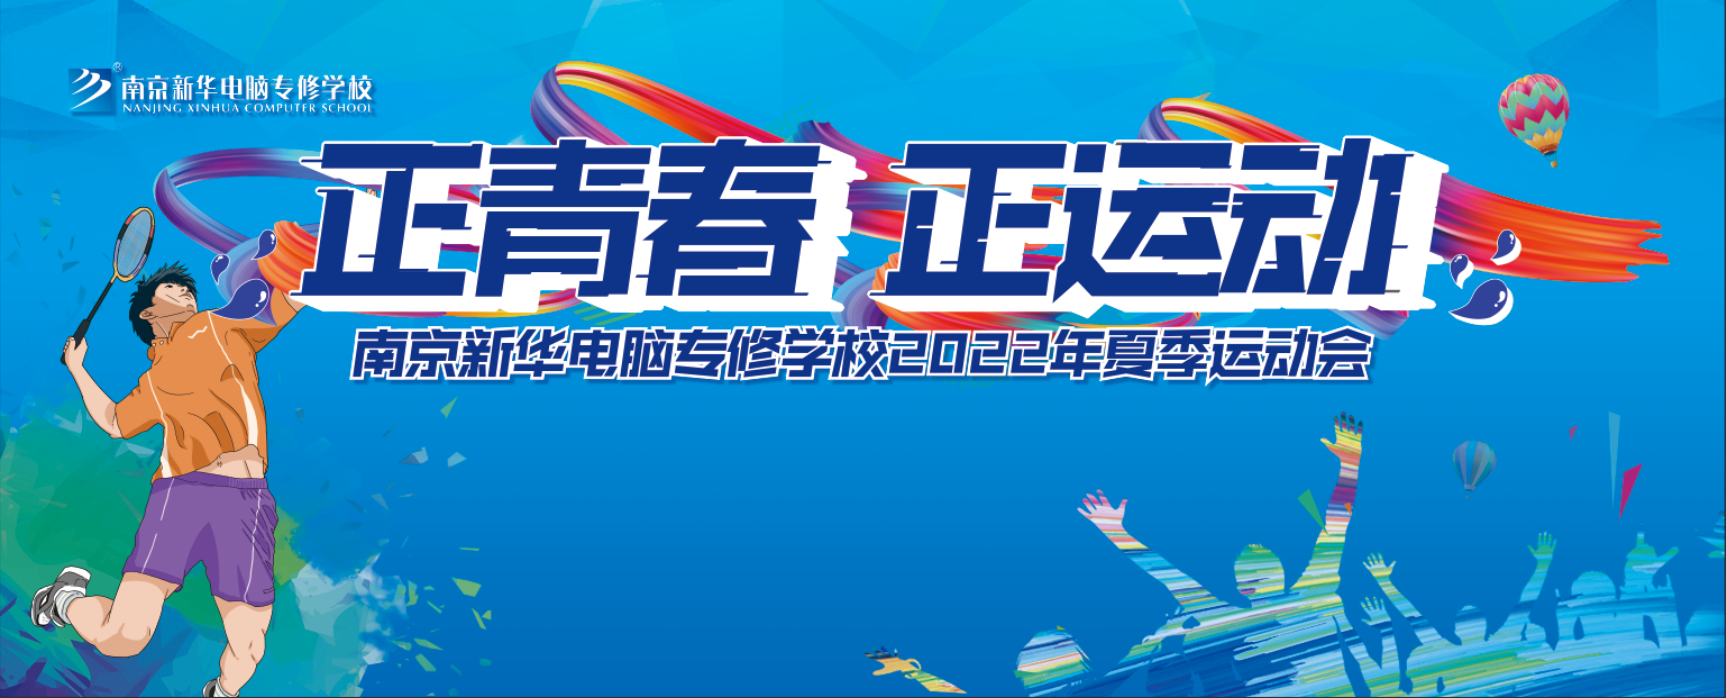 正青春 正运动|南京新华电脑专修学校2022年夏季运动会圆满举行